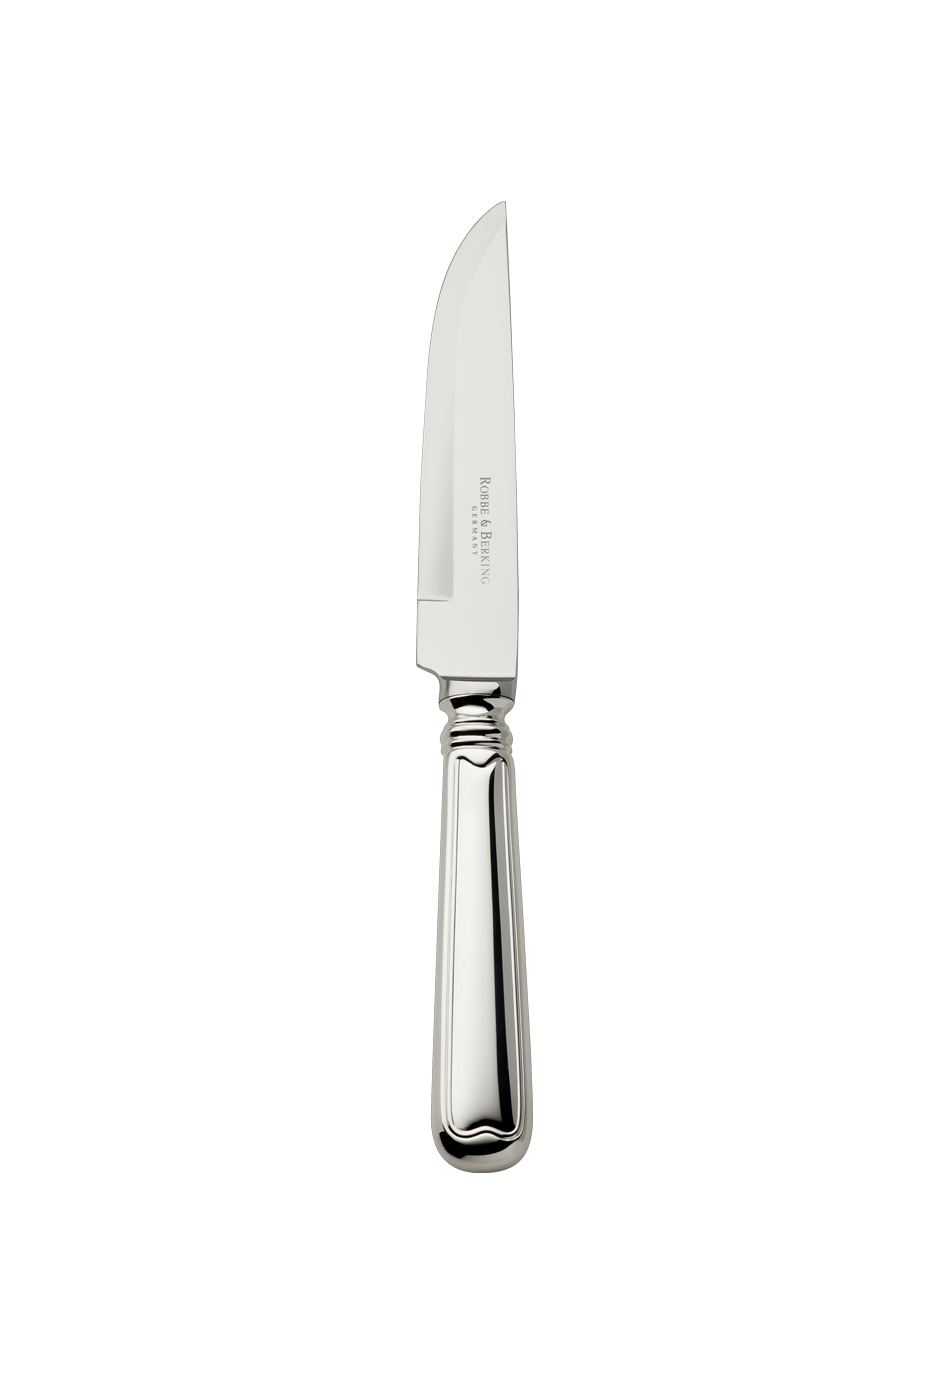 Alt-Faden Steak Knife (925 Sterling Silver)